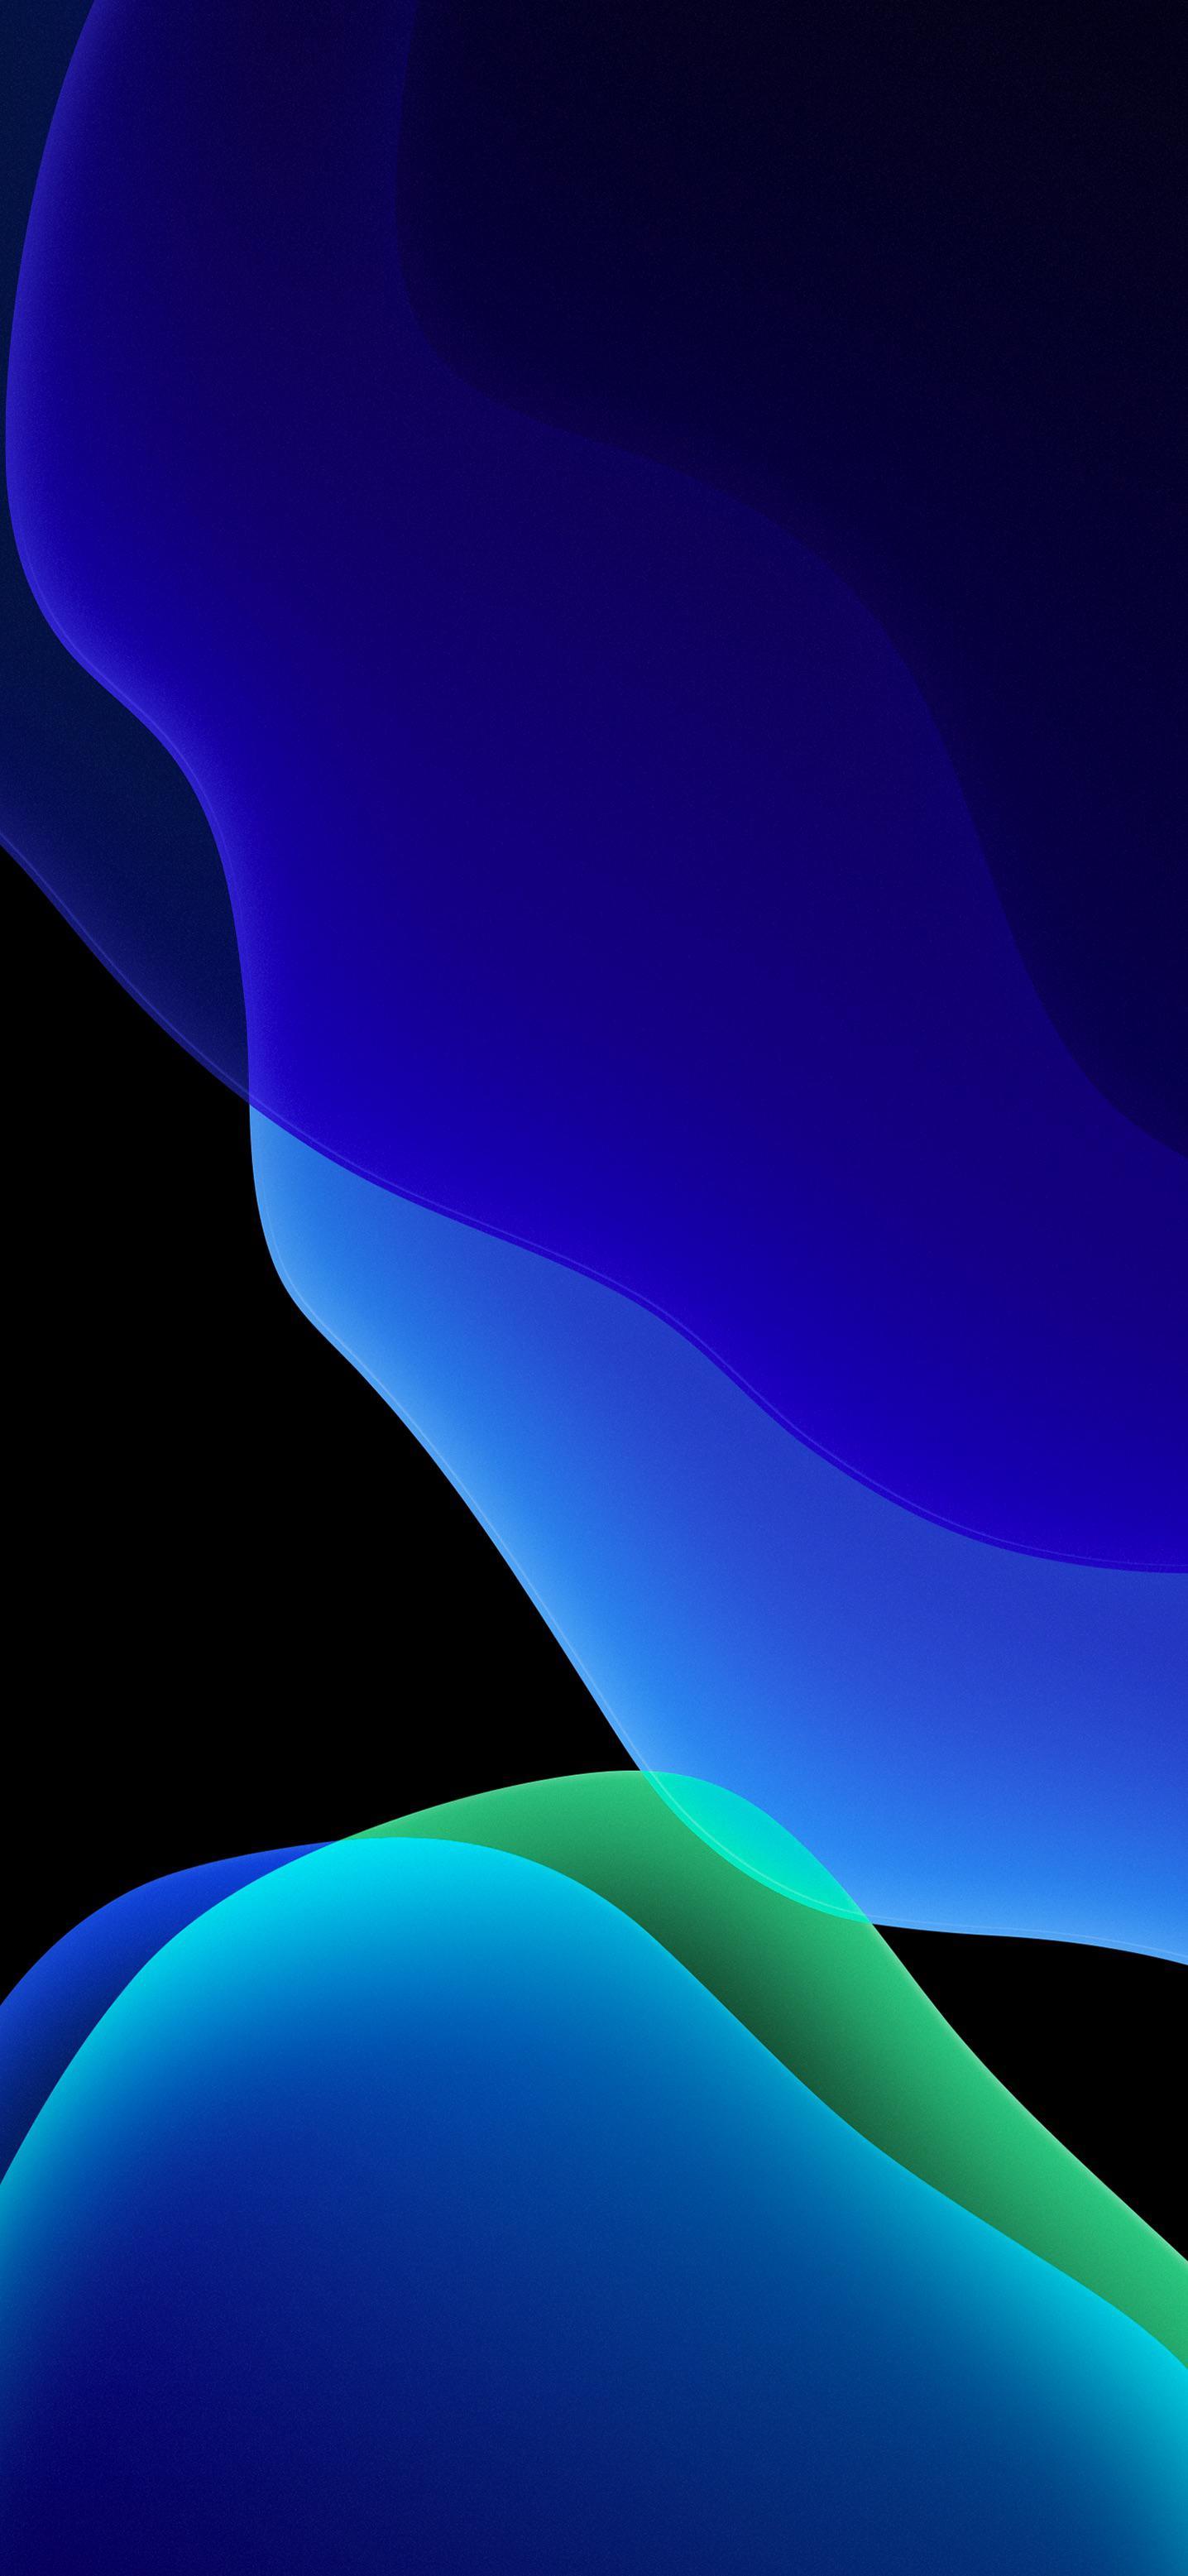 Hình nền xanh iOS 13: thể hiện tình yêu của bạn với iOS 13 thông qua những hình nền xanh xác định và cực kỳ đẹp mắt. Tận hưởng sự đồng bộ và hài hòa với một mẫu hình nền chuẩn này.